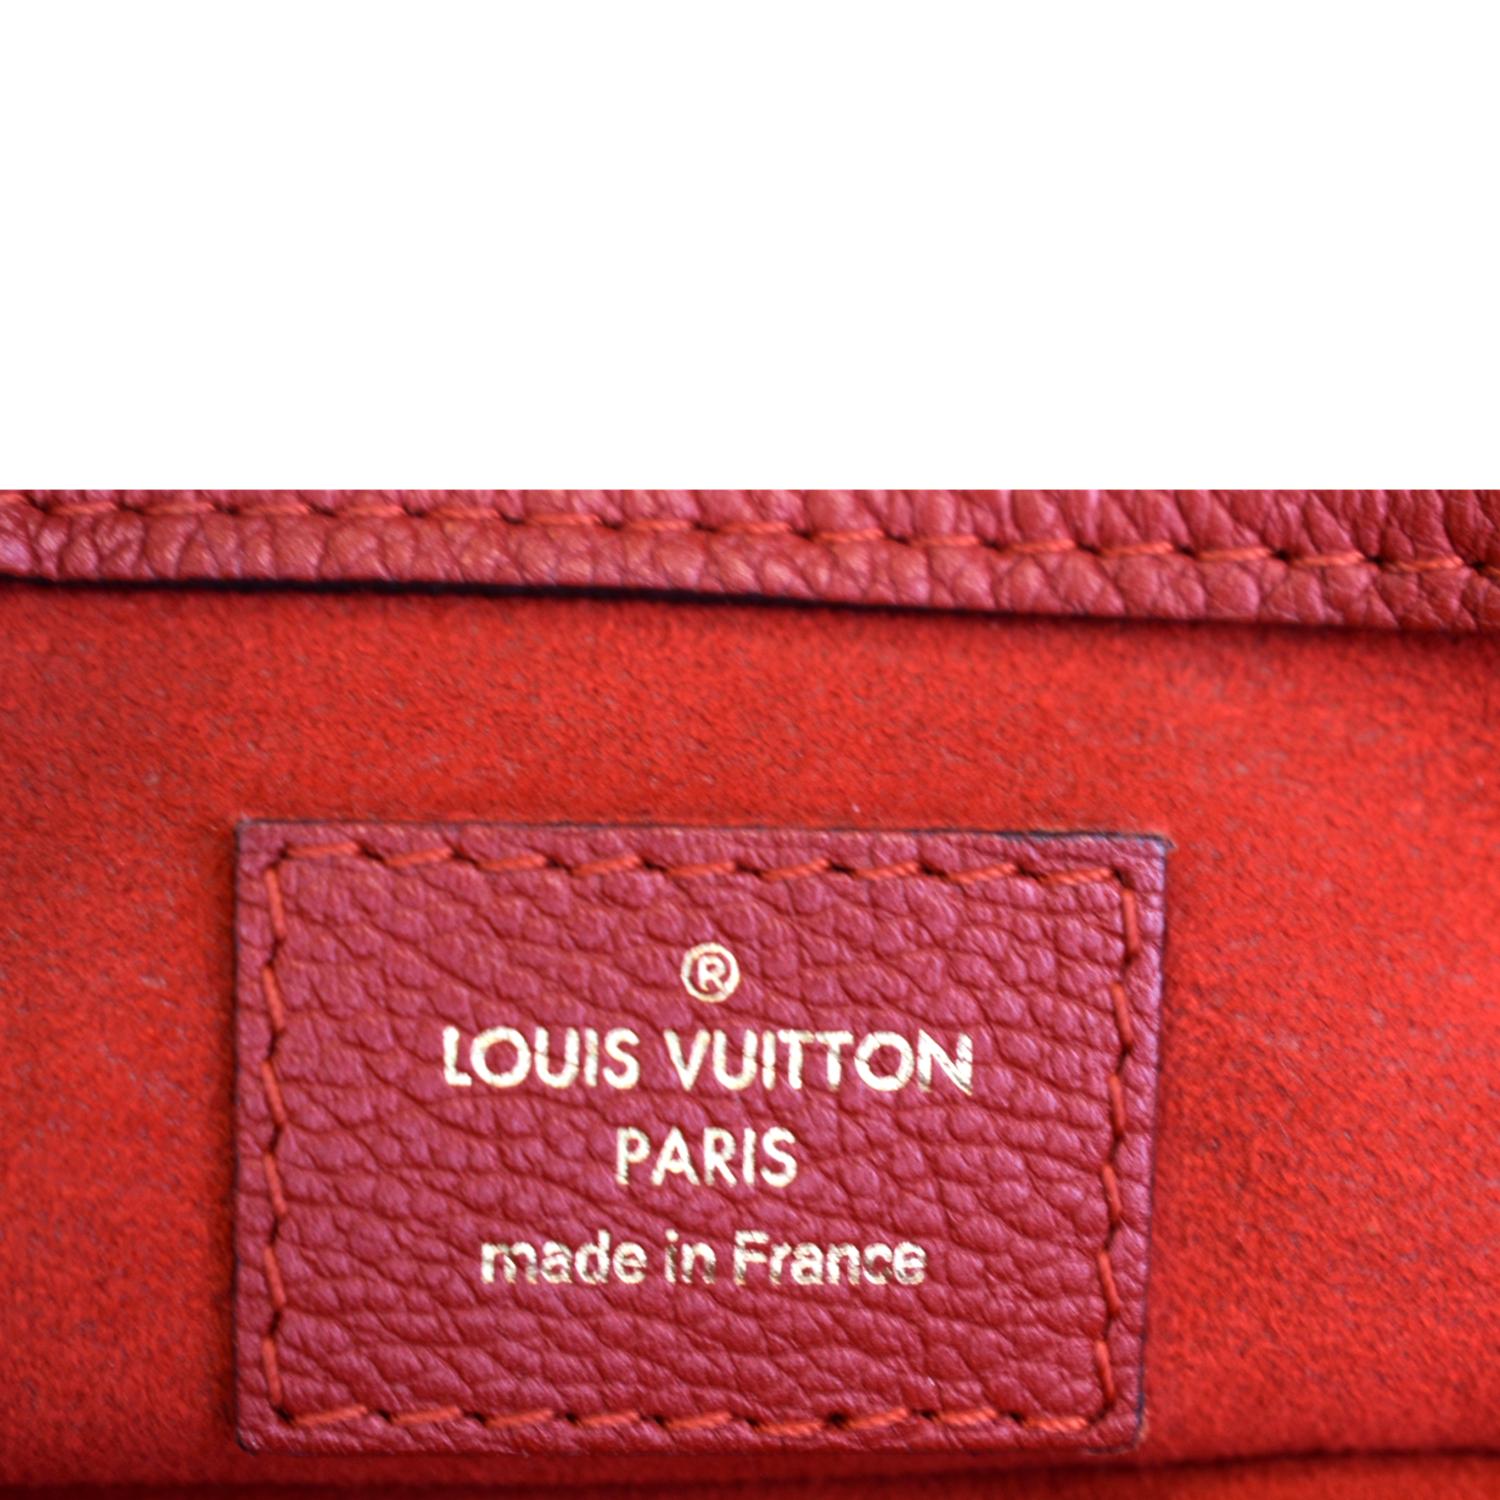 Louis Vuitton Cerise Monogram Canvas Pallas Shopper Tote Bag Louis Vuitton